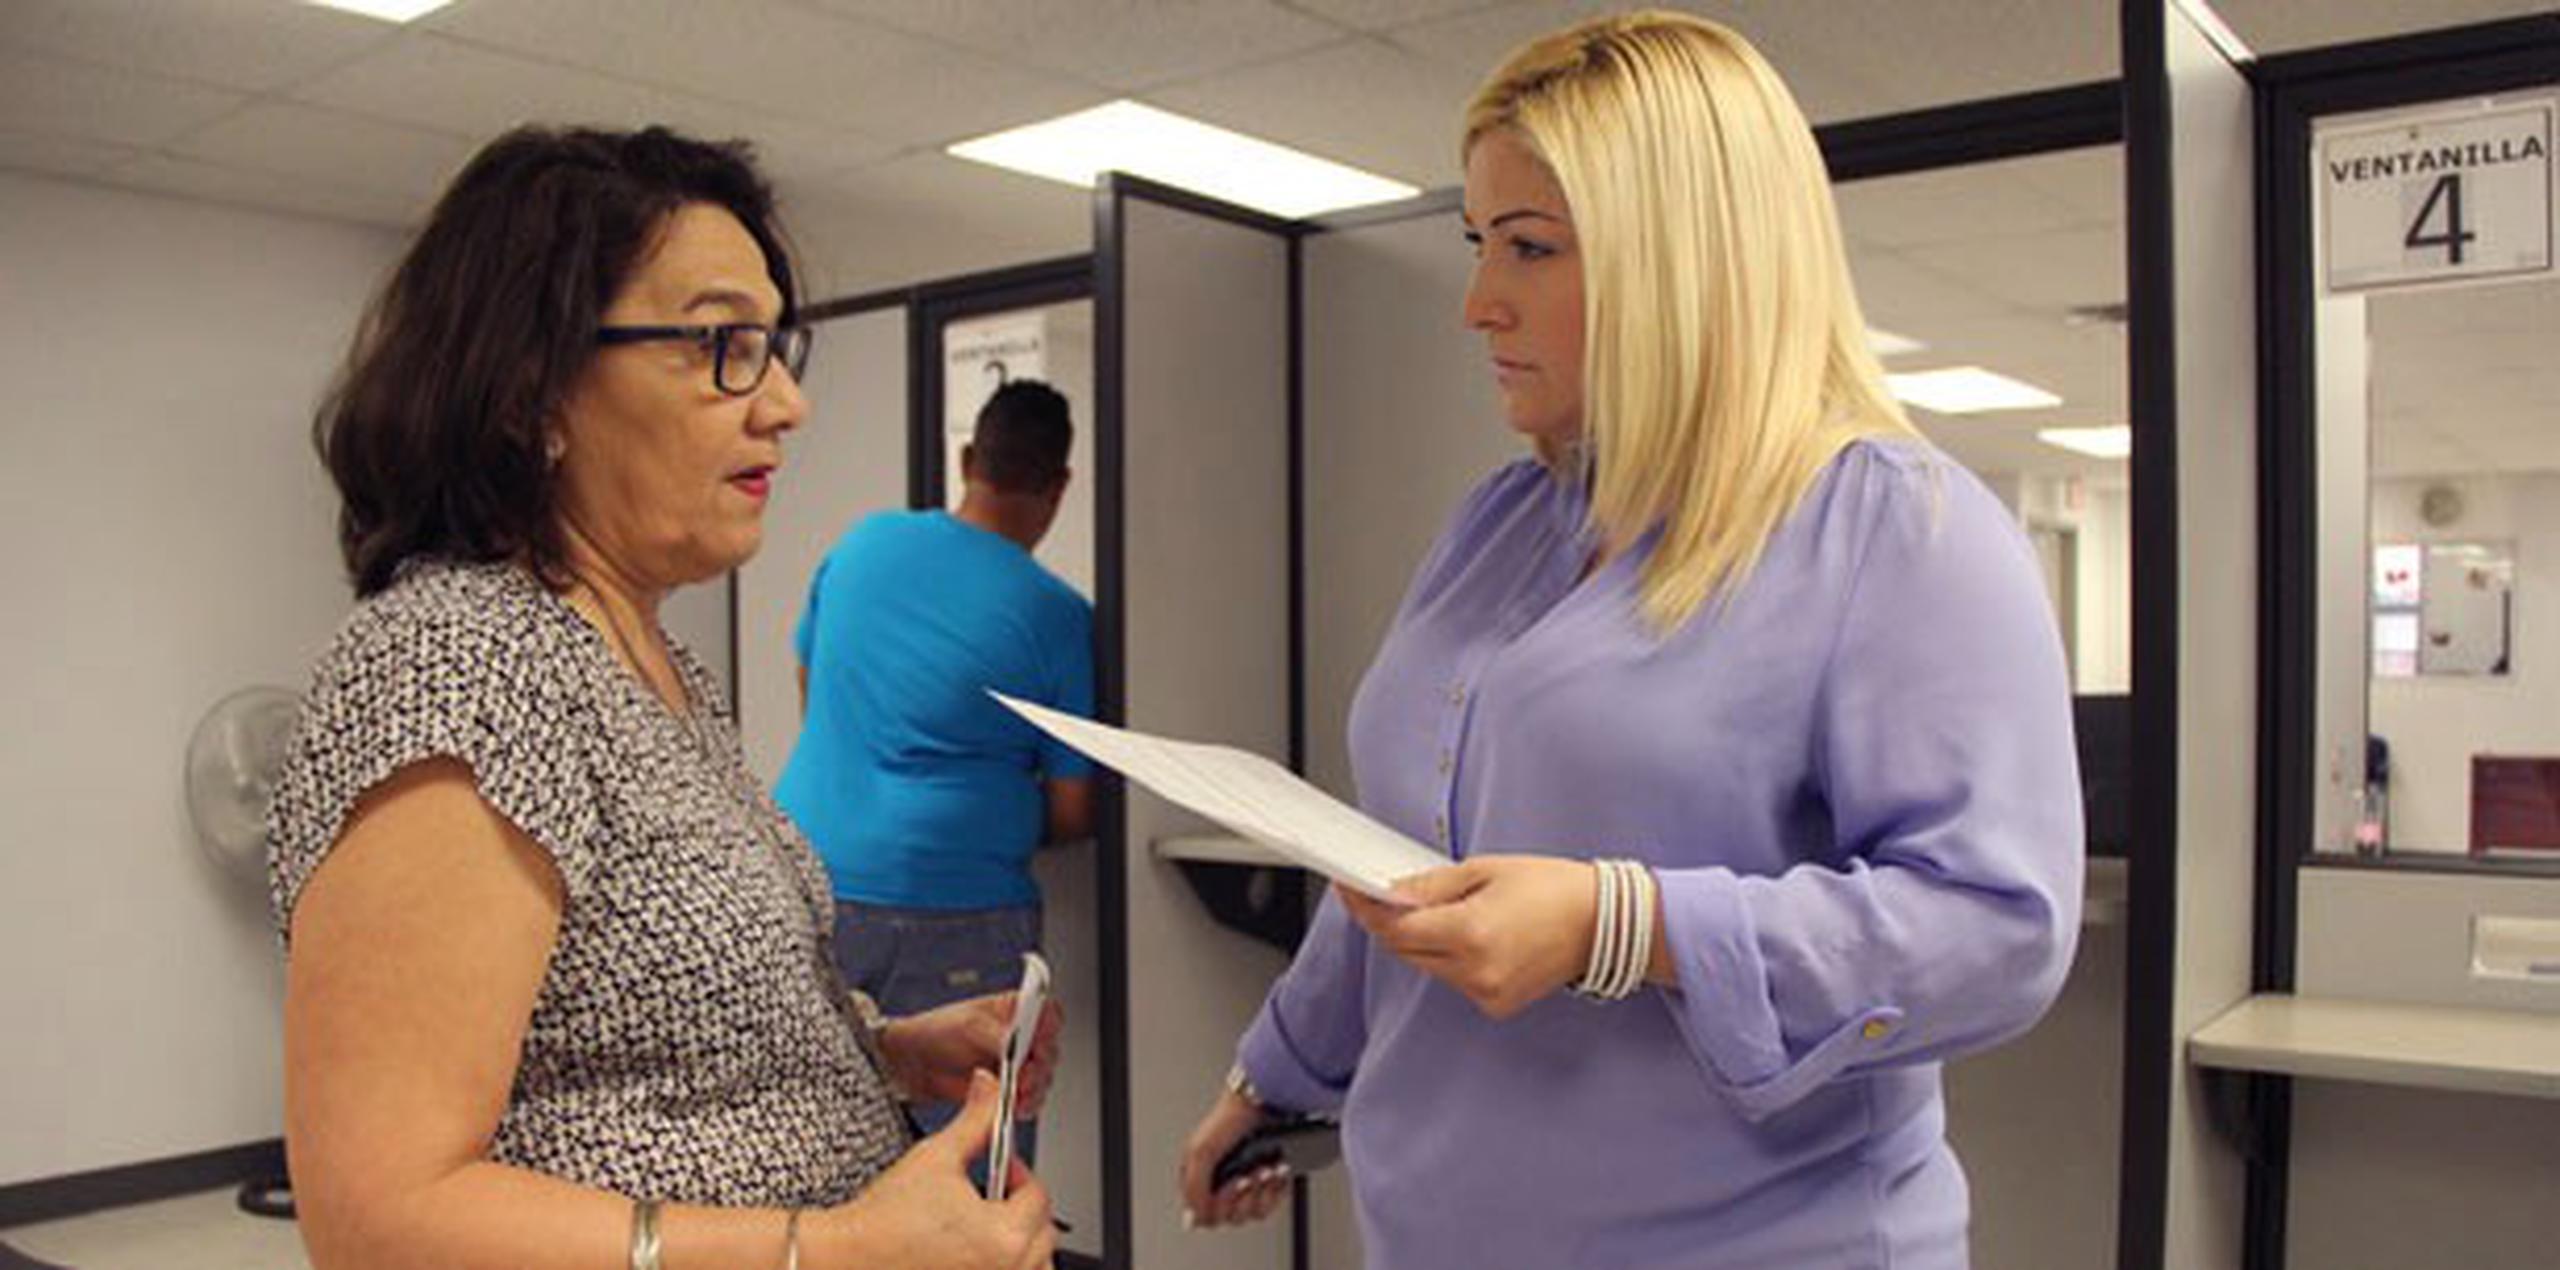 Nancy Vega, directora del Registro Demografico, habla con la empleada Eidivannie Molina sobre los nuevos formularios.  (alex.figueroa@gfrmedia.com)